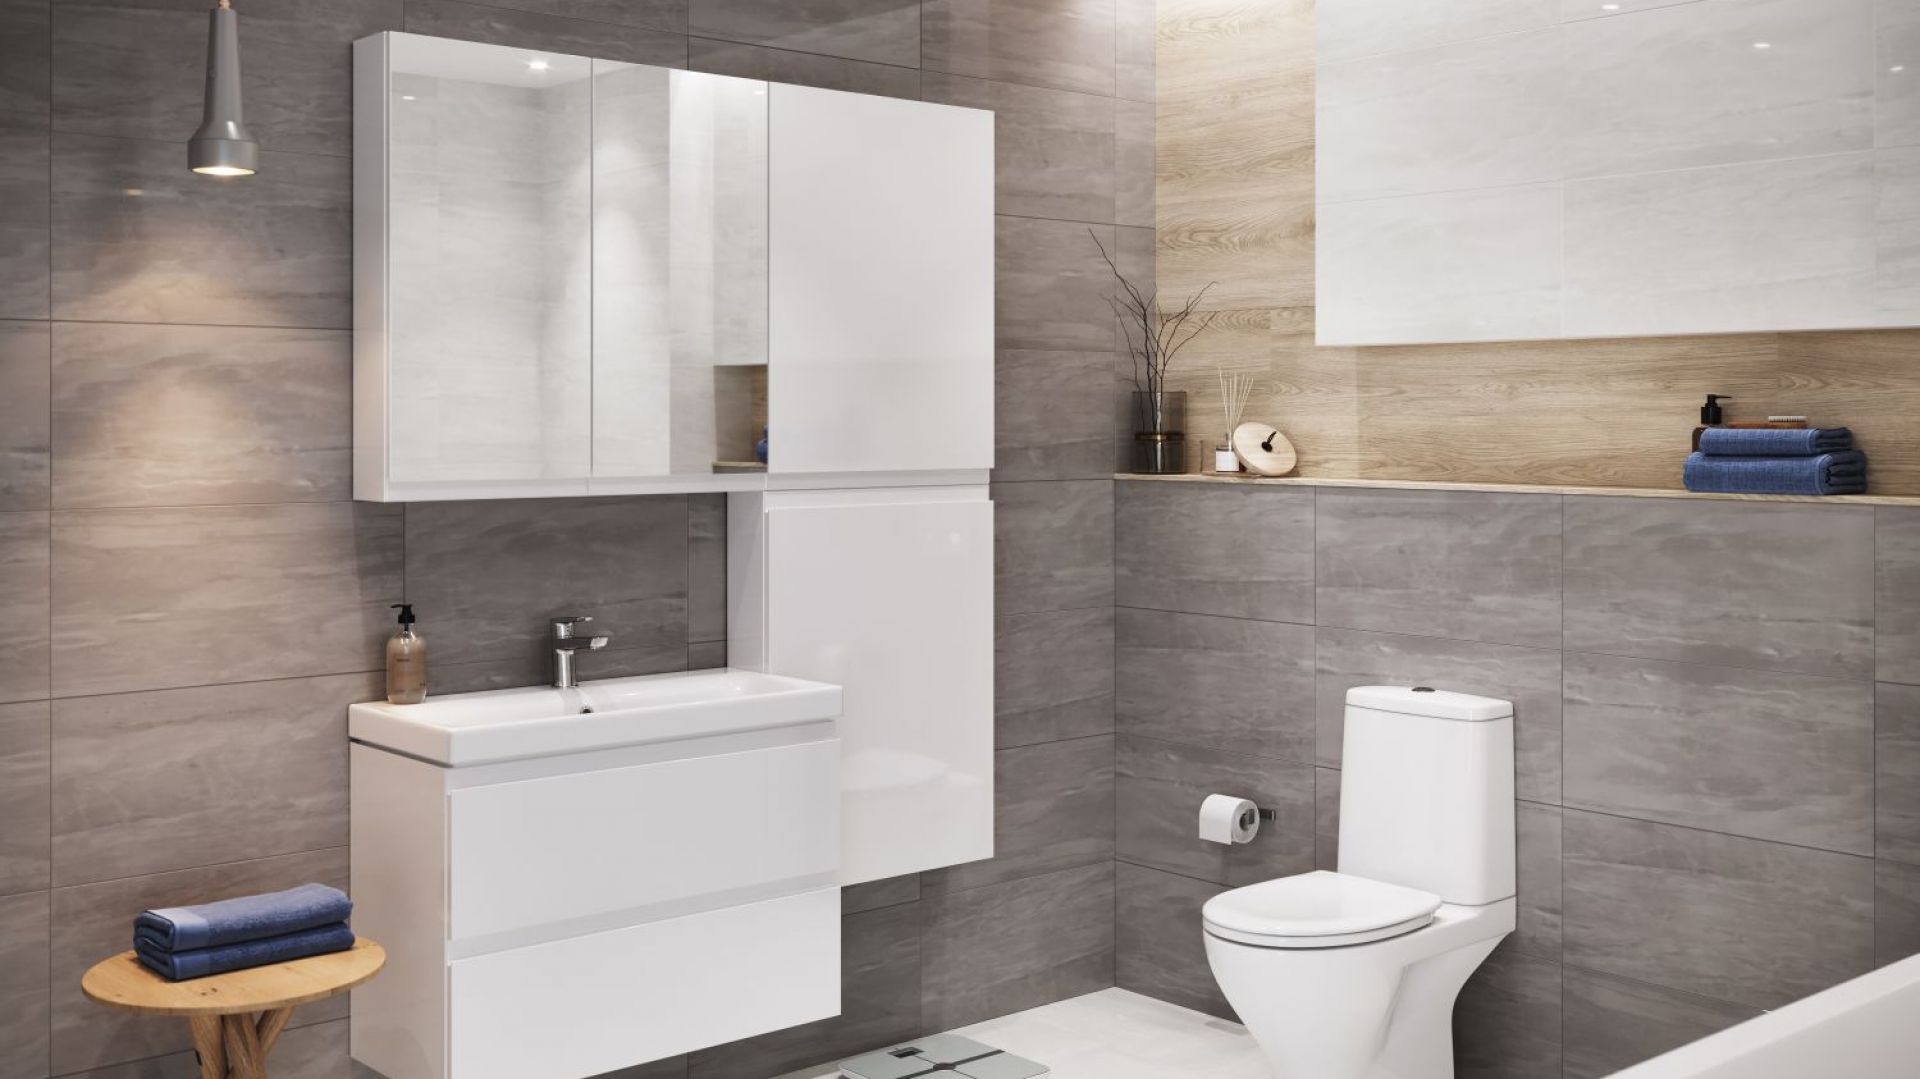 Sprzątanie łazienki - będzie łatwiejsze z minimalistycznym wyposażeniem!